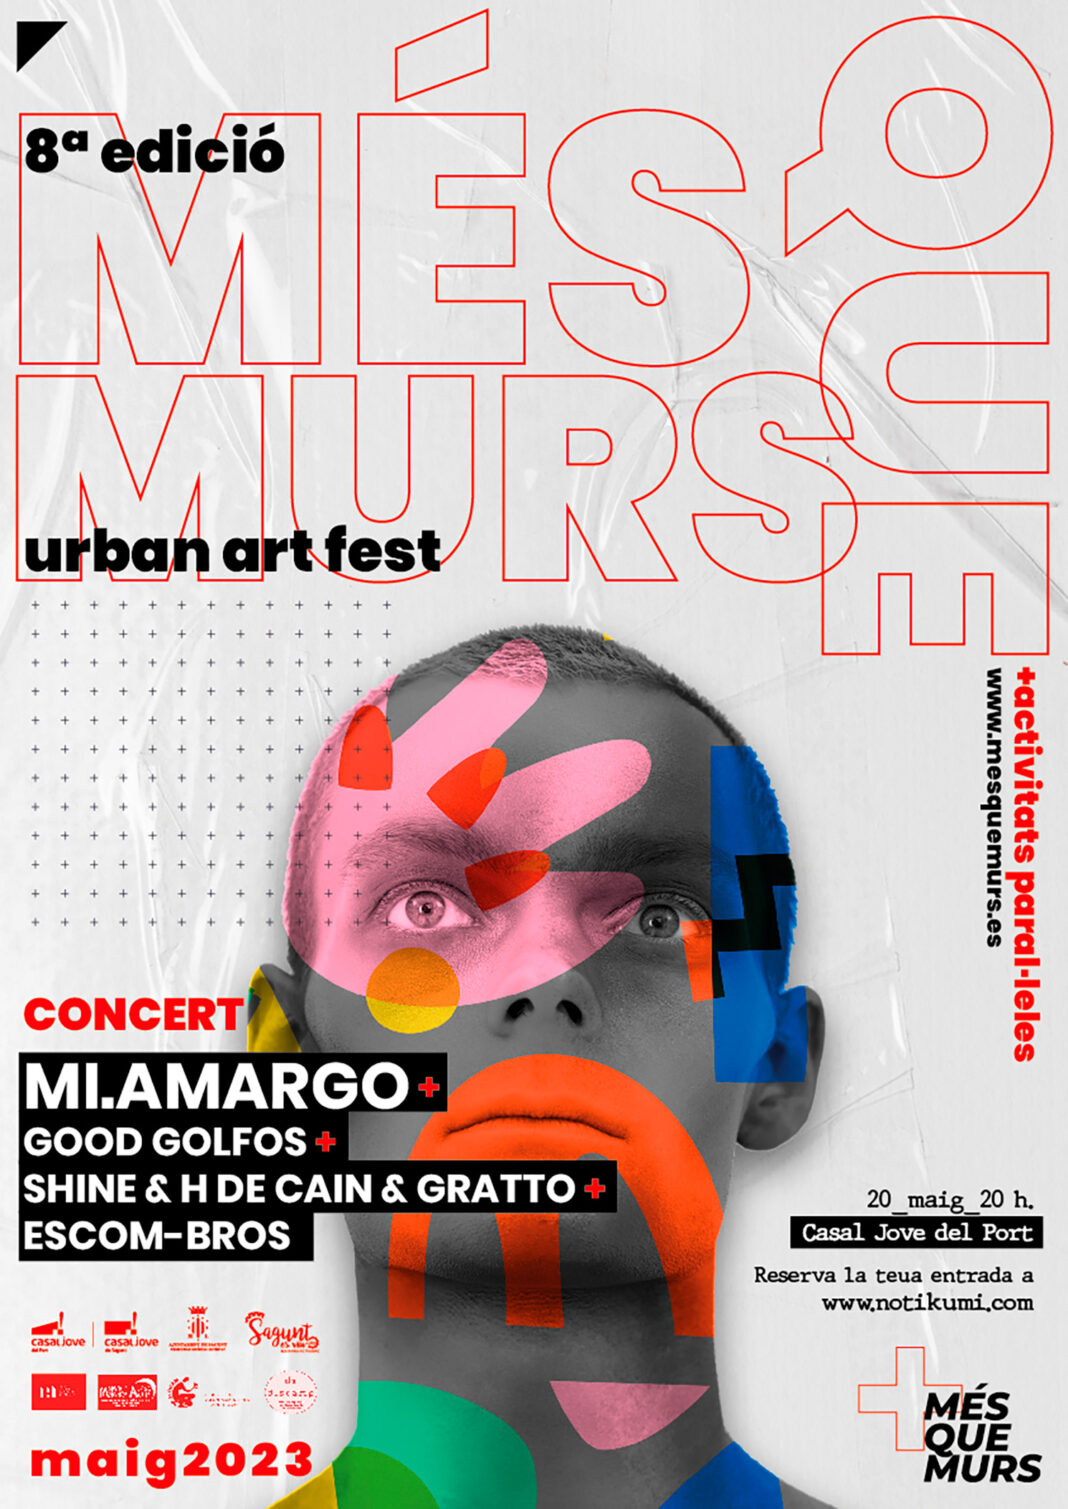 El Festival de arte urbano Més que Murs de Sagunto contará con Mi.Amargo con música en directo